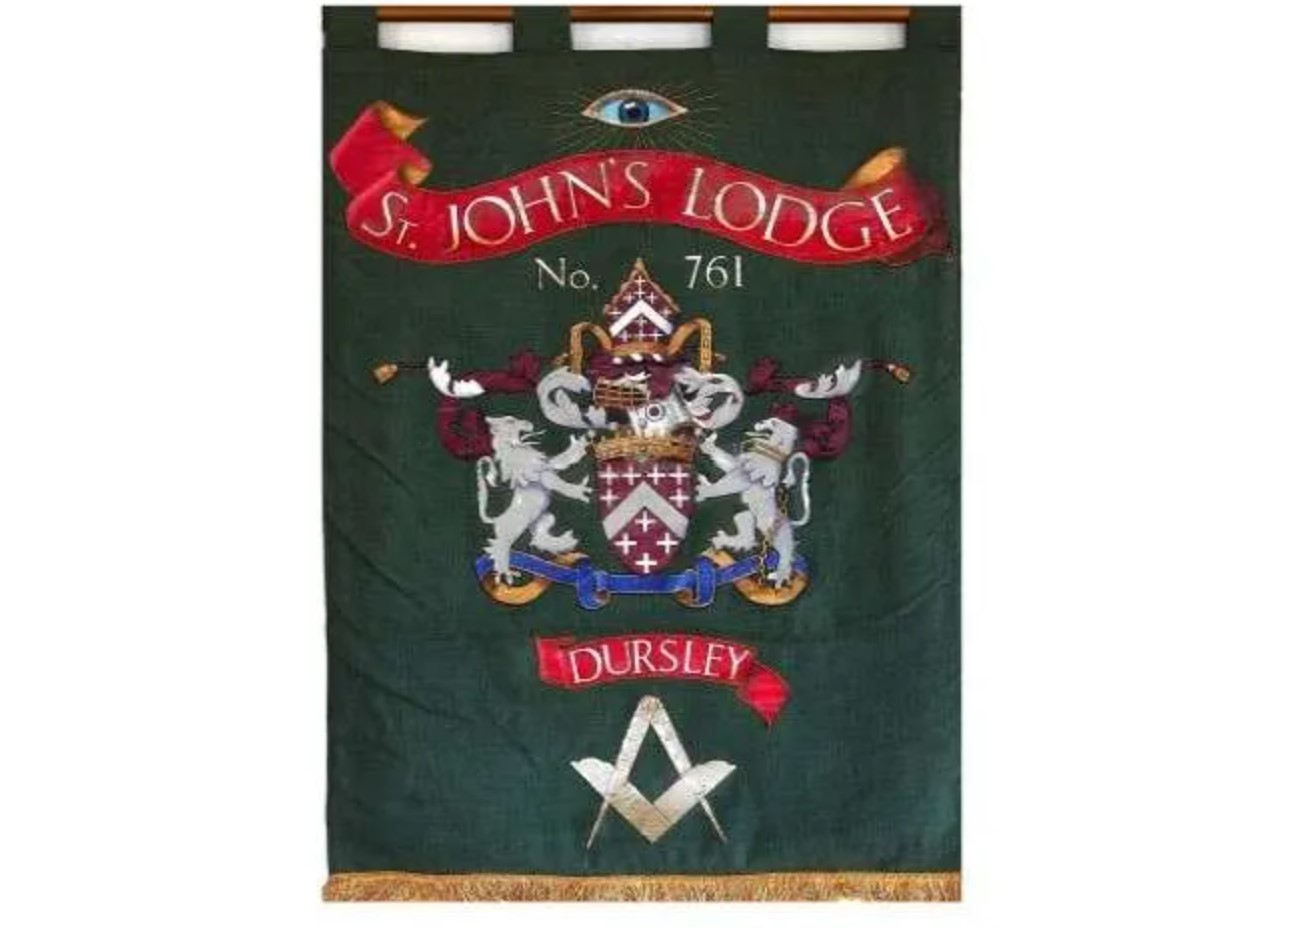 St John's Lodge